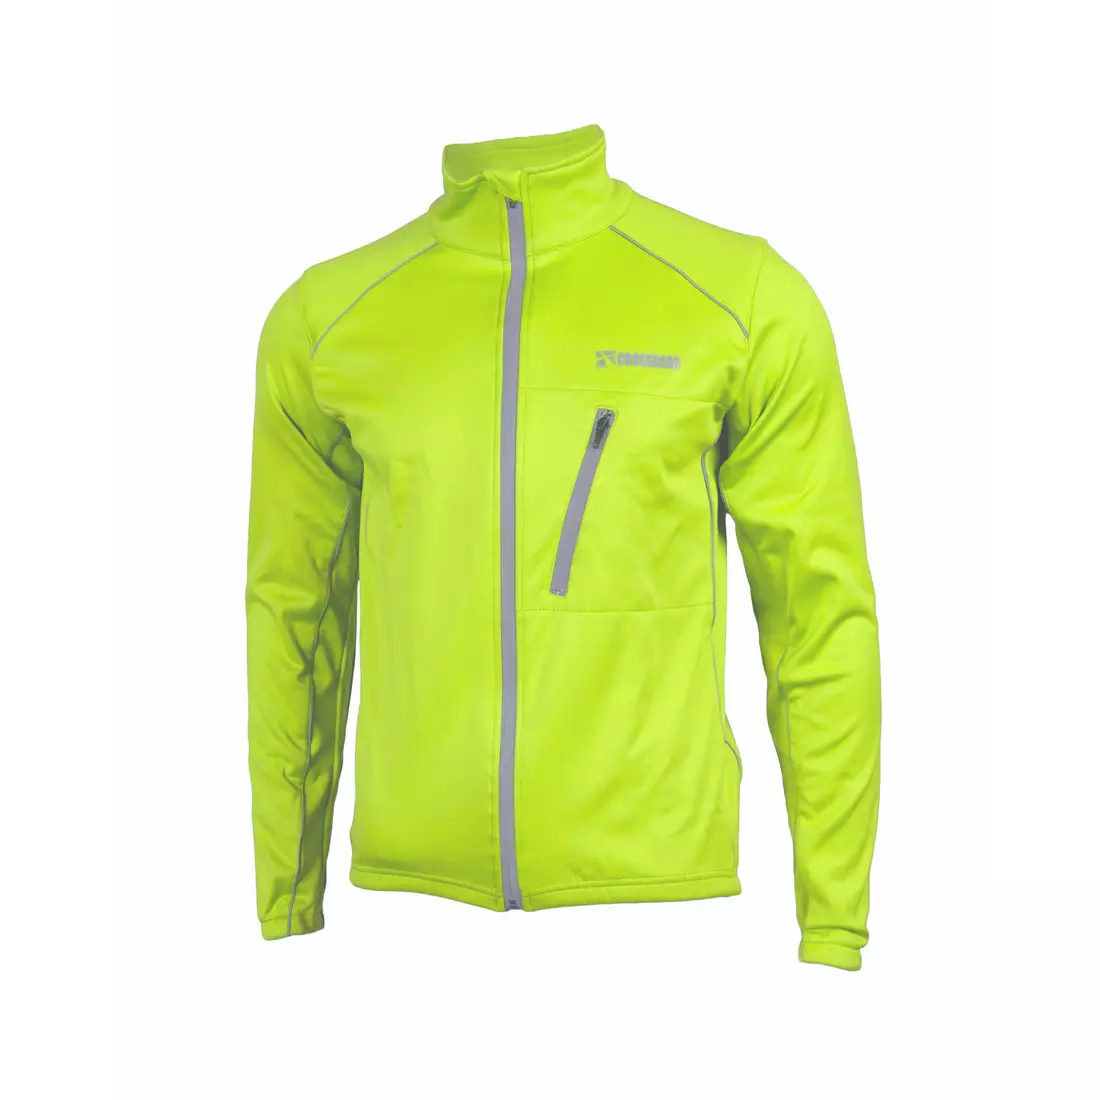 CROSSROAD ROCKFORD téli kerékpáros kabát, softshell, fluor